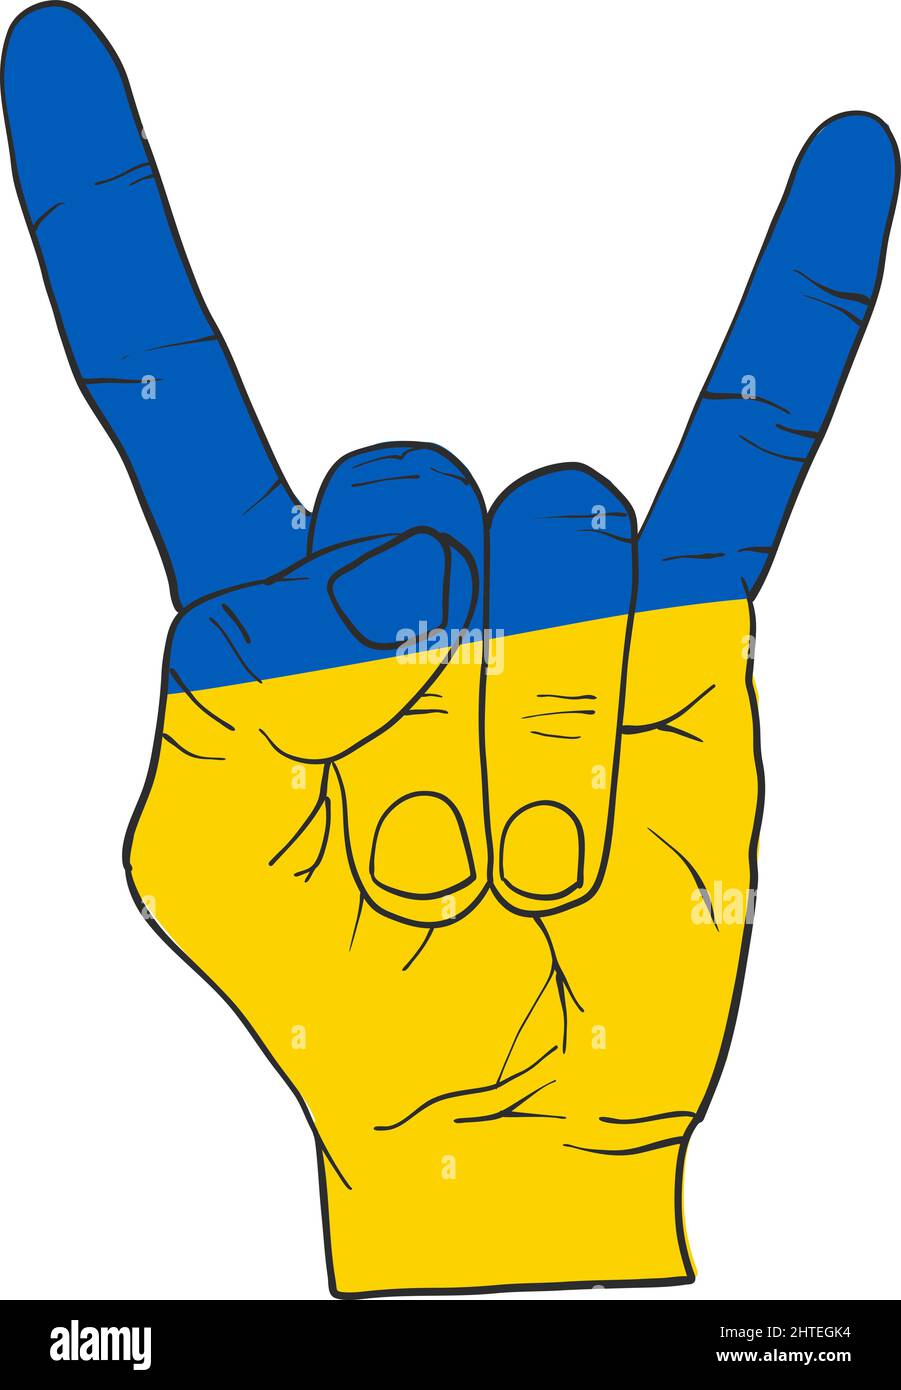 Segno di libertà per il popolo ucraino. Icona di sostegno per Kyiv e Ucraina. Resta forte insieme. Simbolo patriottico, icona.-SupplementalCategories Illustrazione Vettoriale